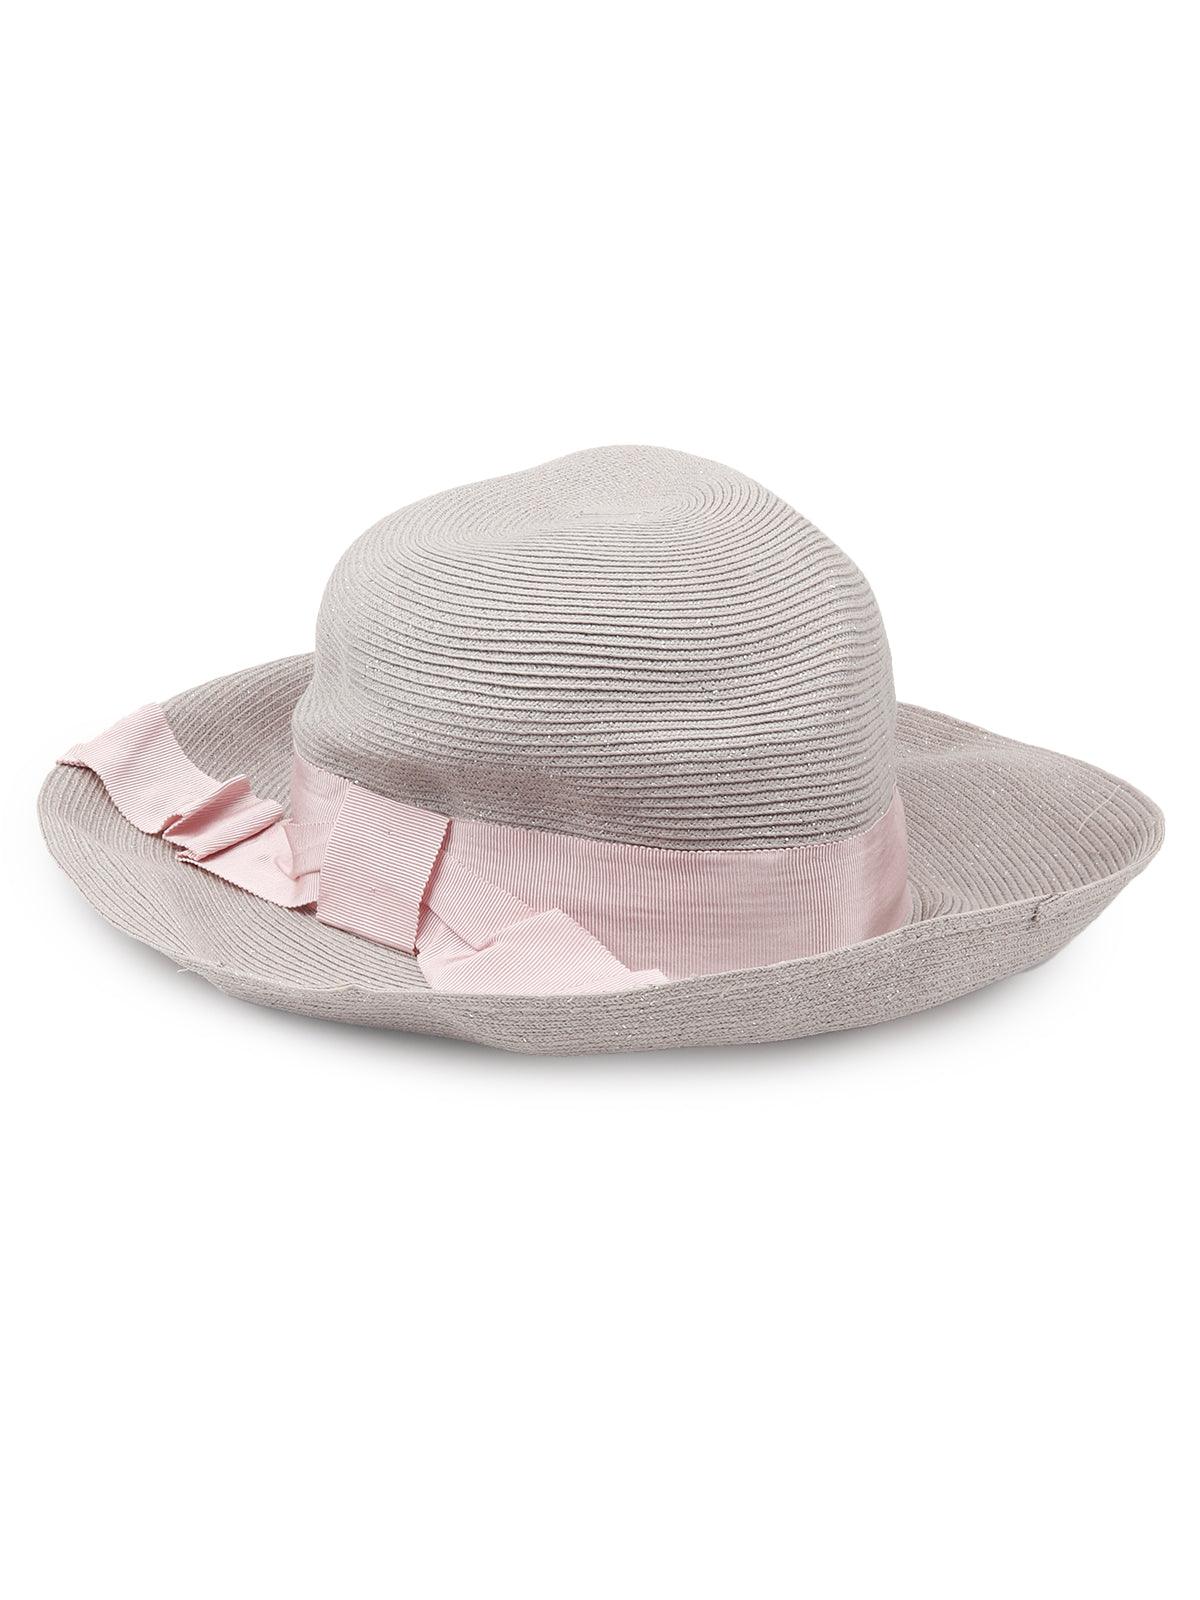 Cute pink hat for women - Odette